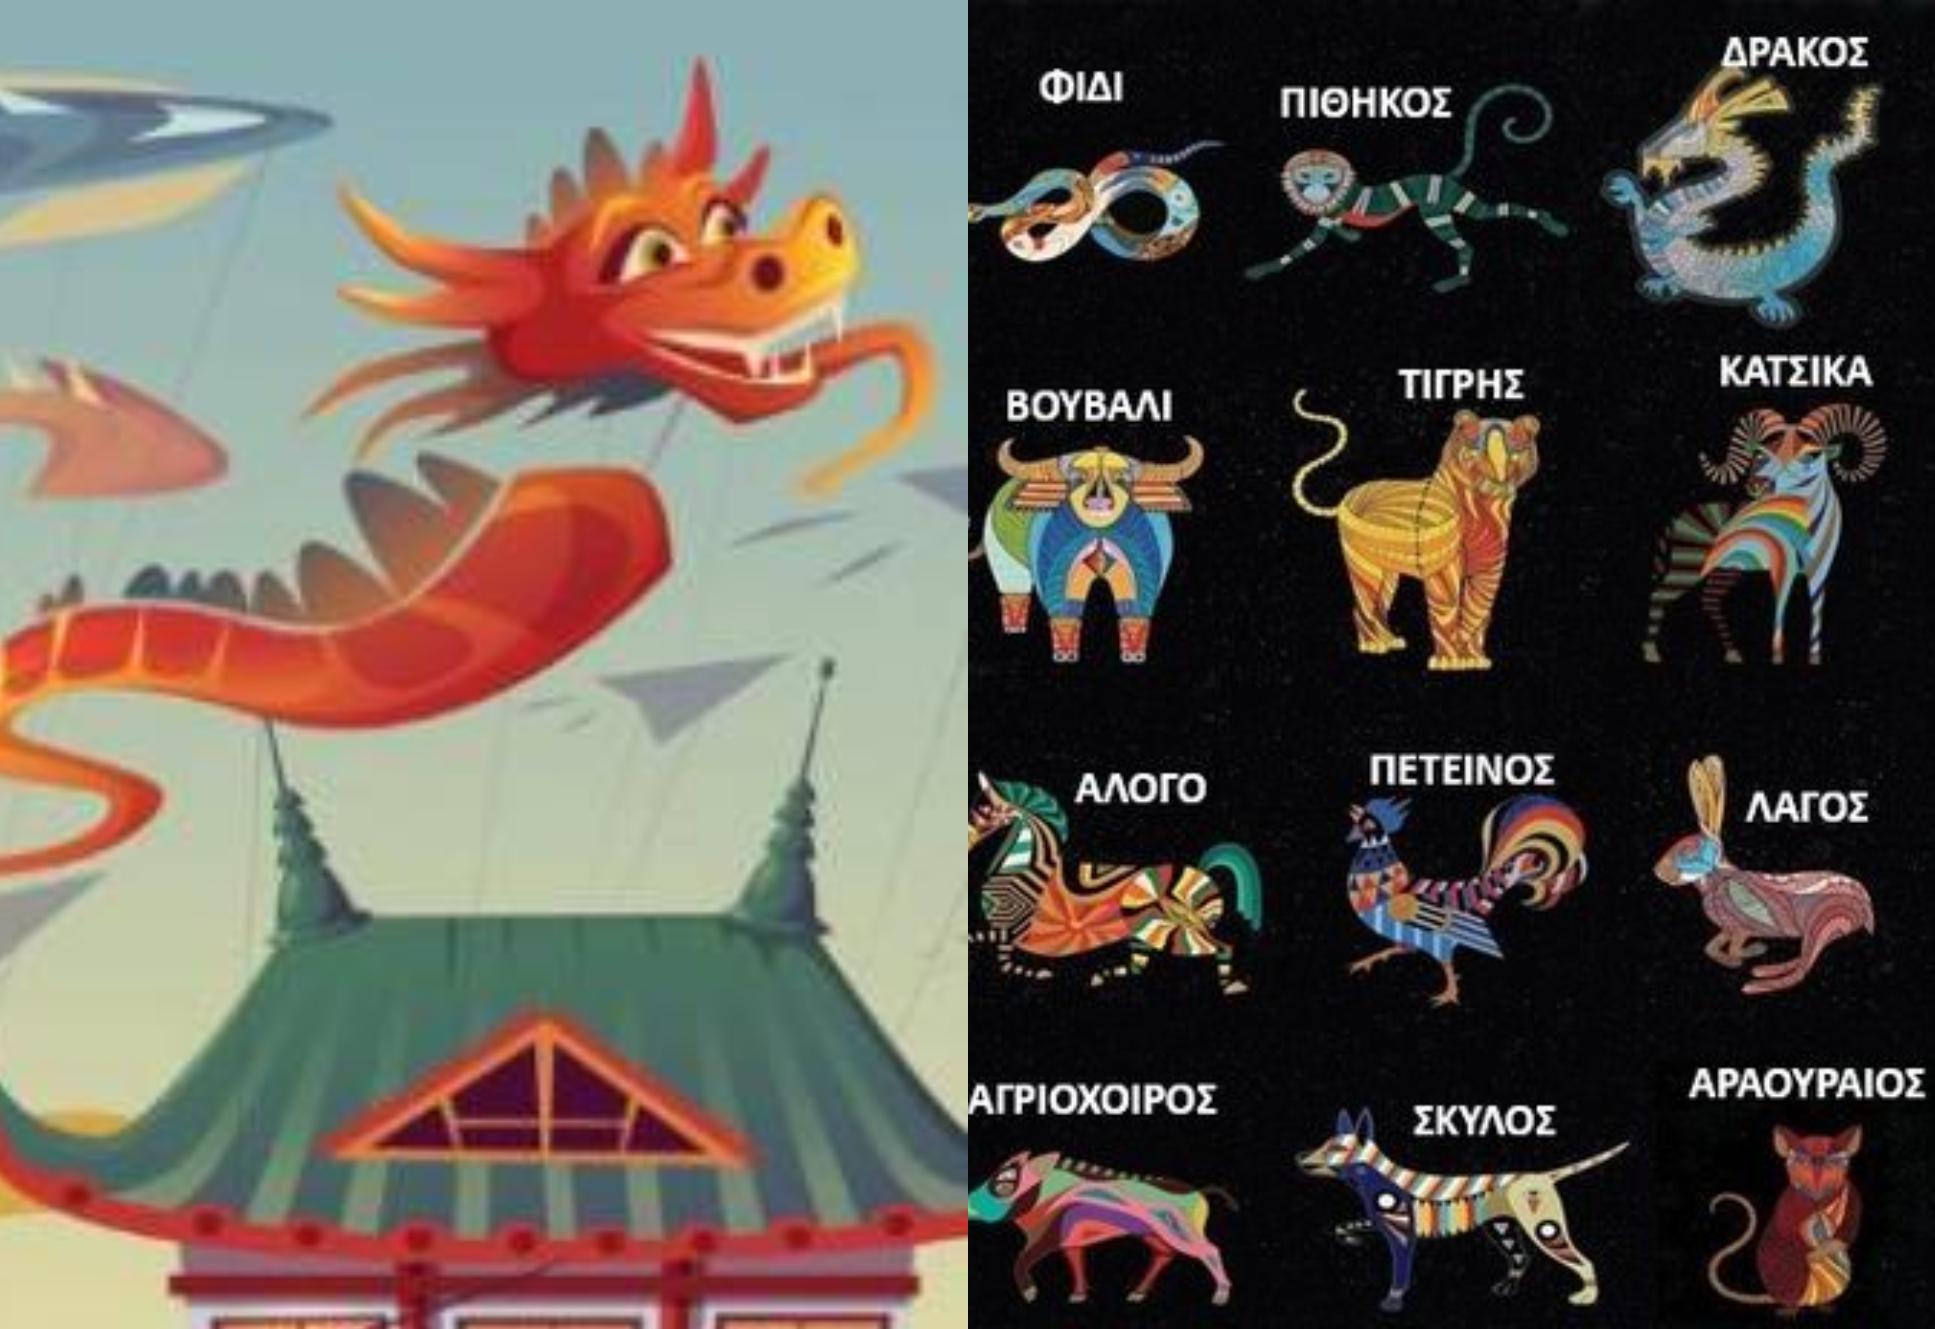 Μηνιαίες προβλέψεις Απριλίου 2023 για όλα τα ζώδια στη Κινέζικη αστρολογία